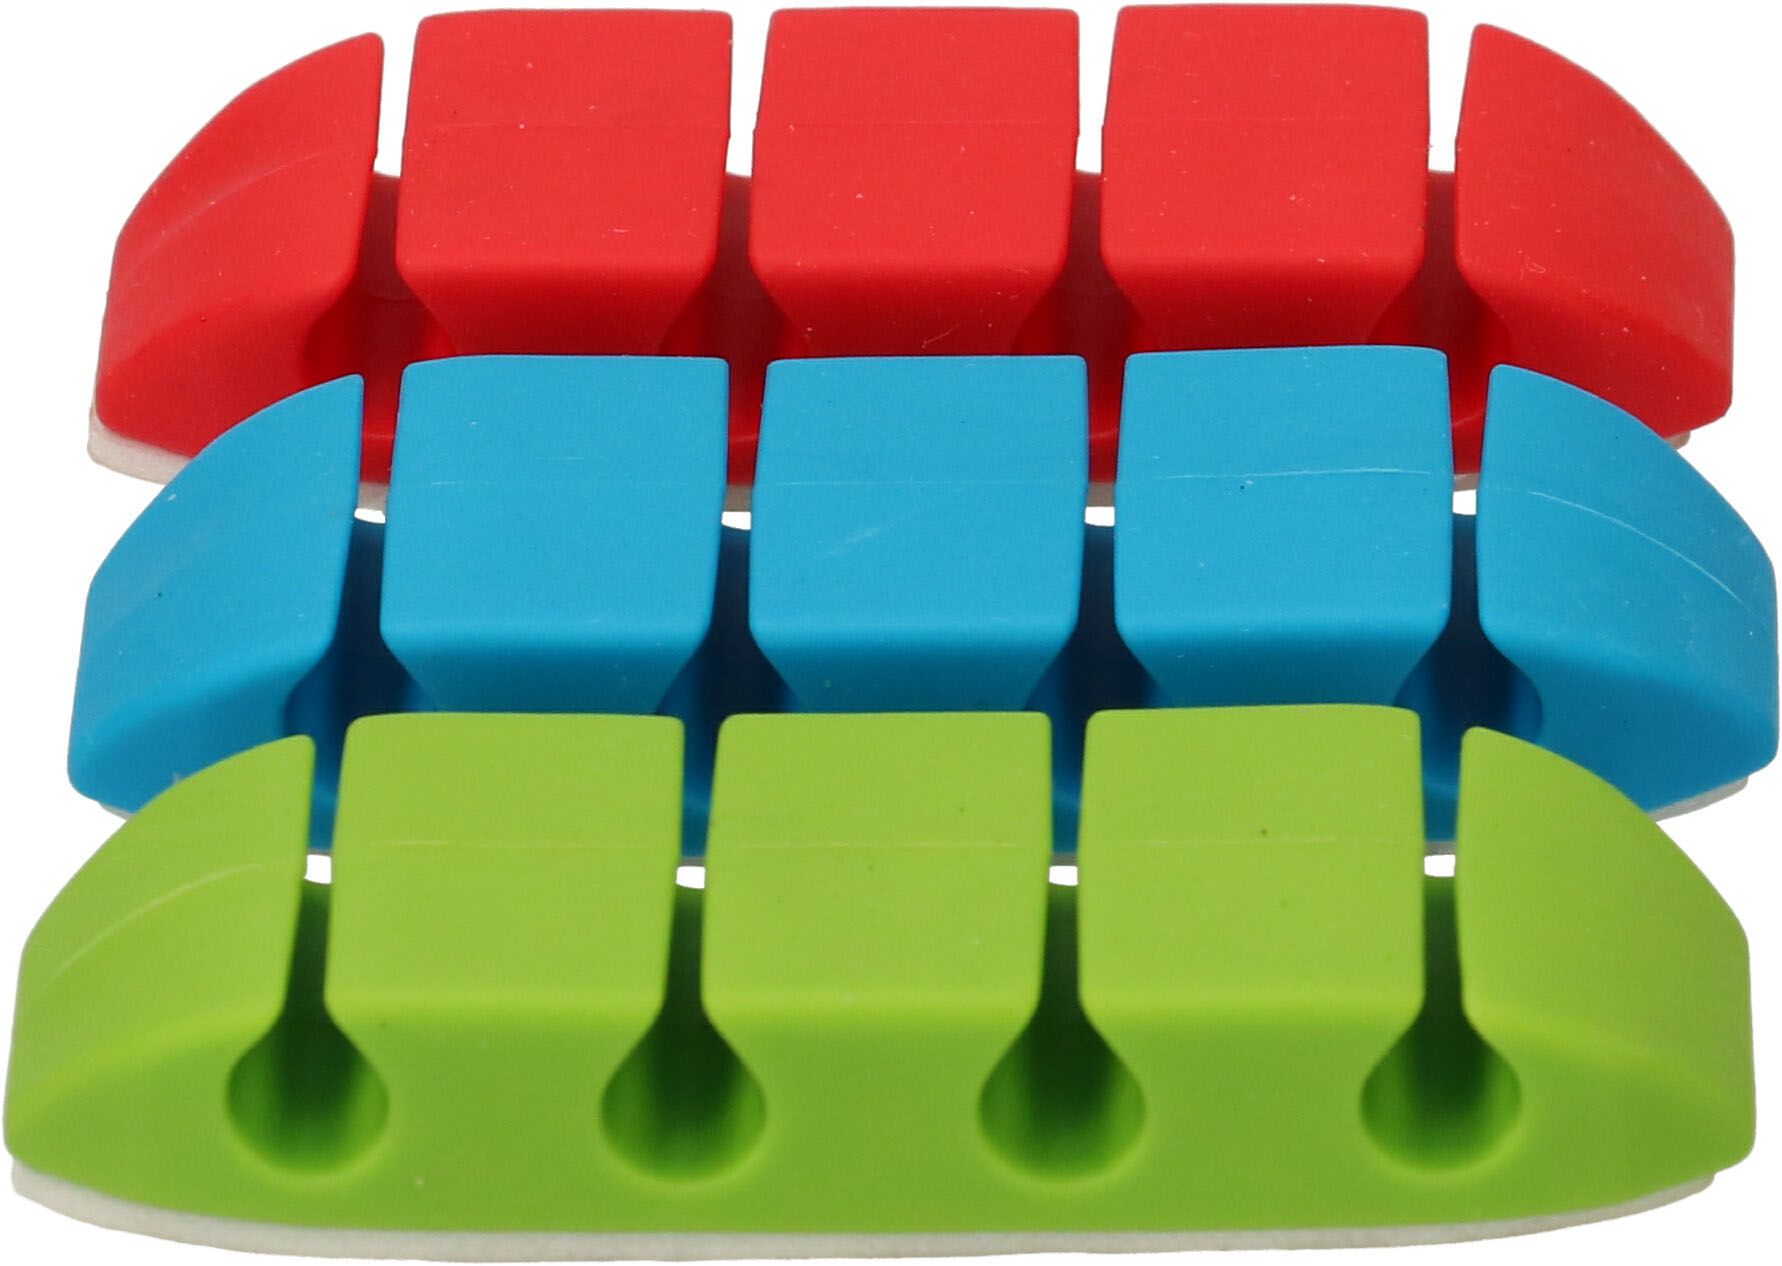 Kabelhalter-Set assortiert 1x grün 1x rot 1x blau